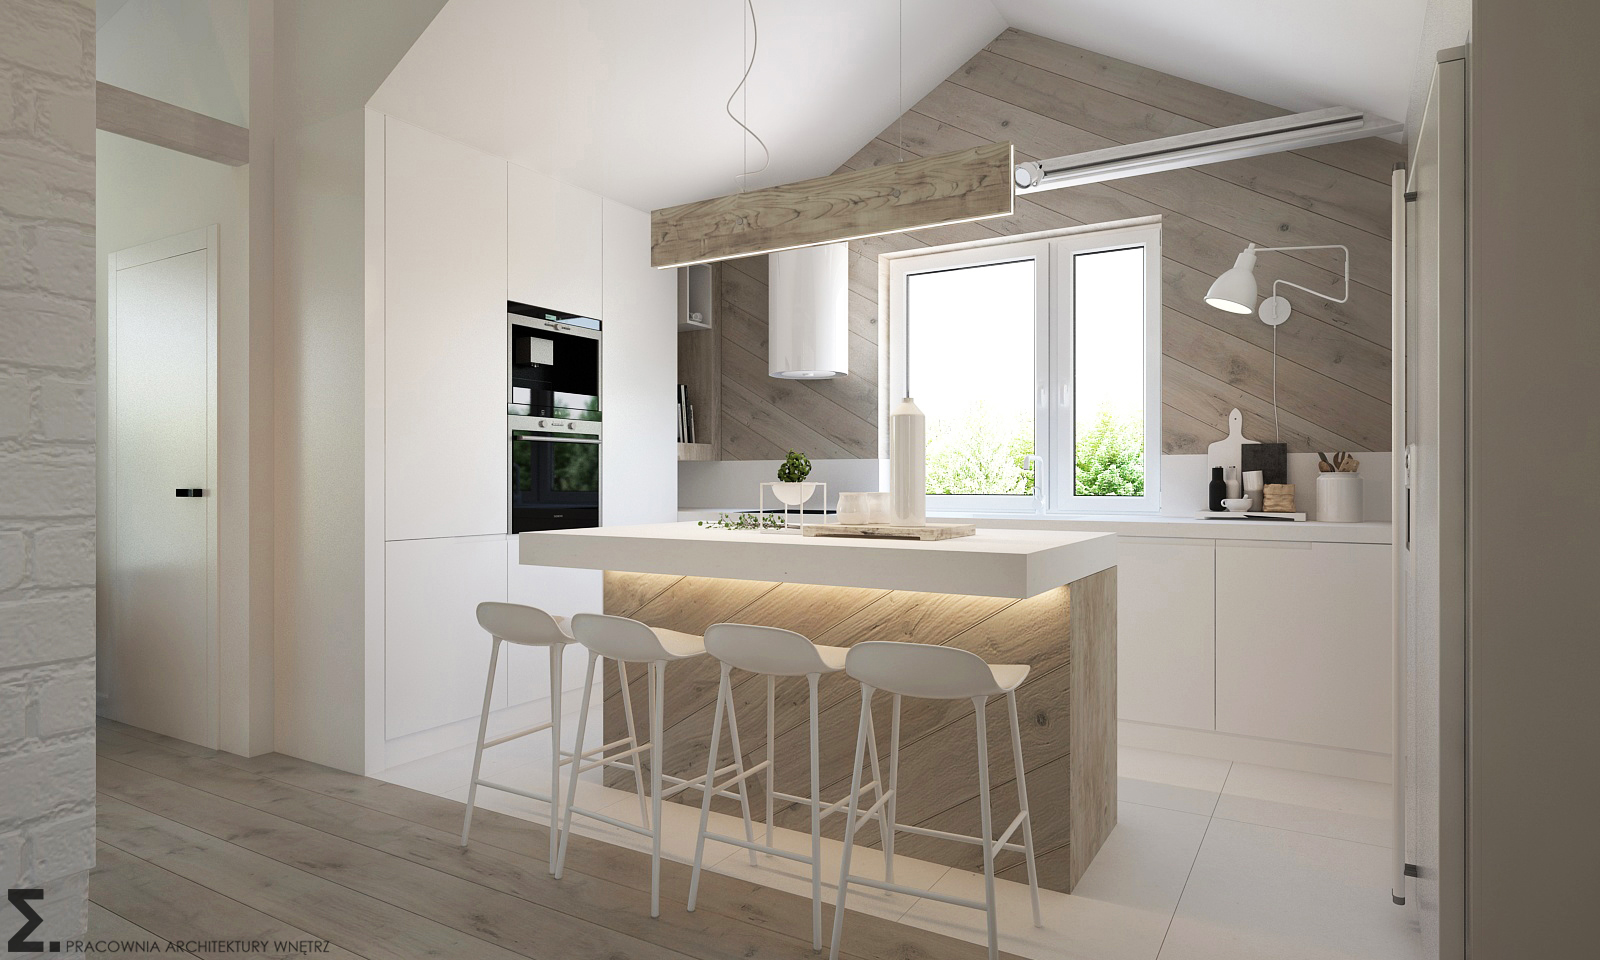 W aranżacji kuchni urzeka połączenie bieli oraz jasnego drewna, szczególnie w postaci desek na ścianie z oknem. Wyspa...